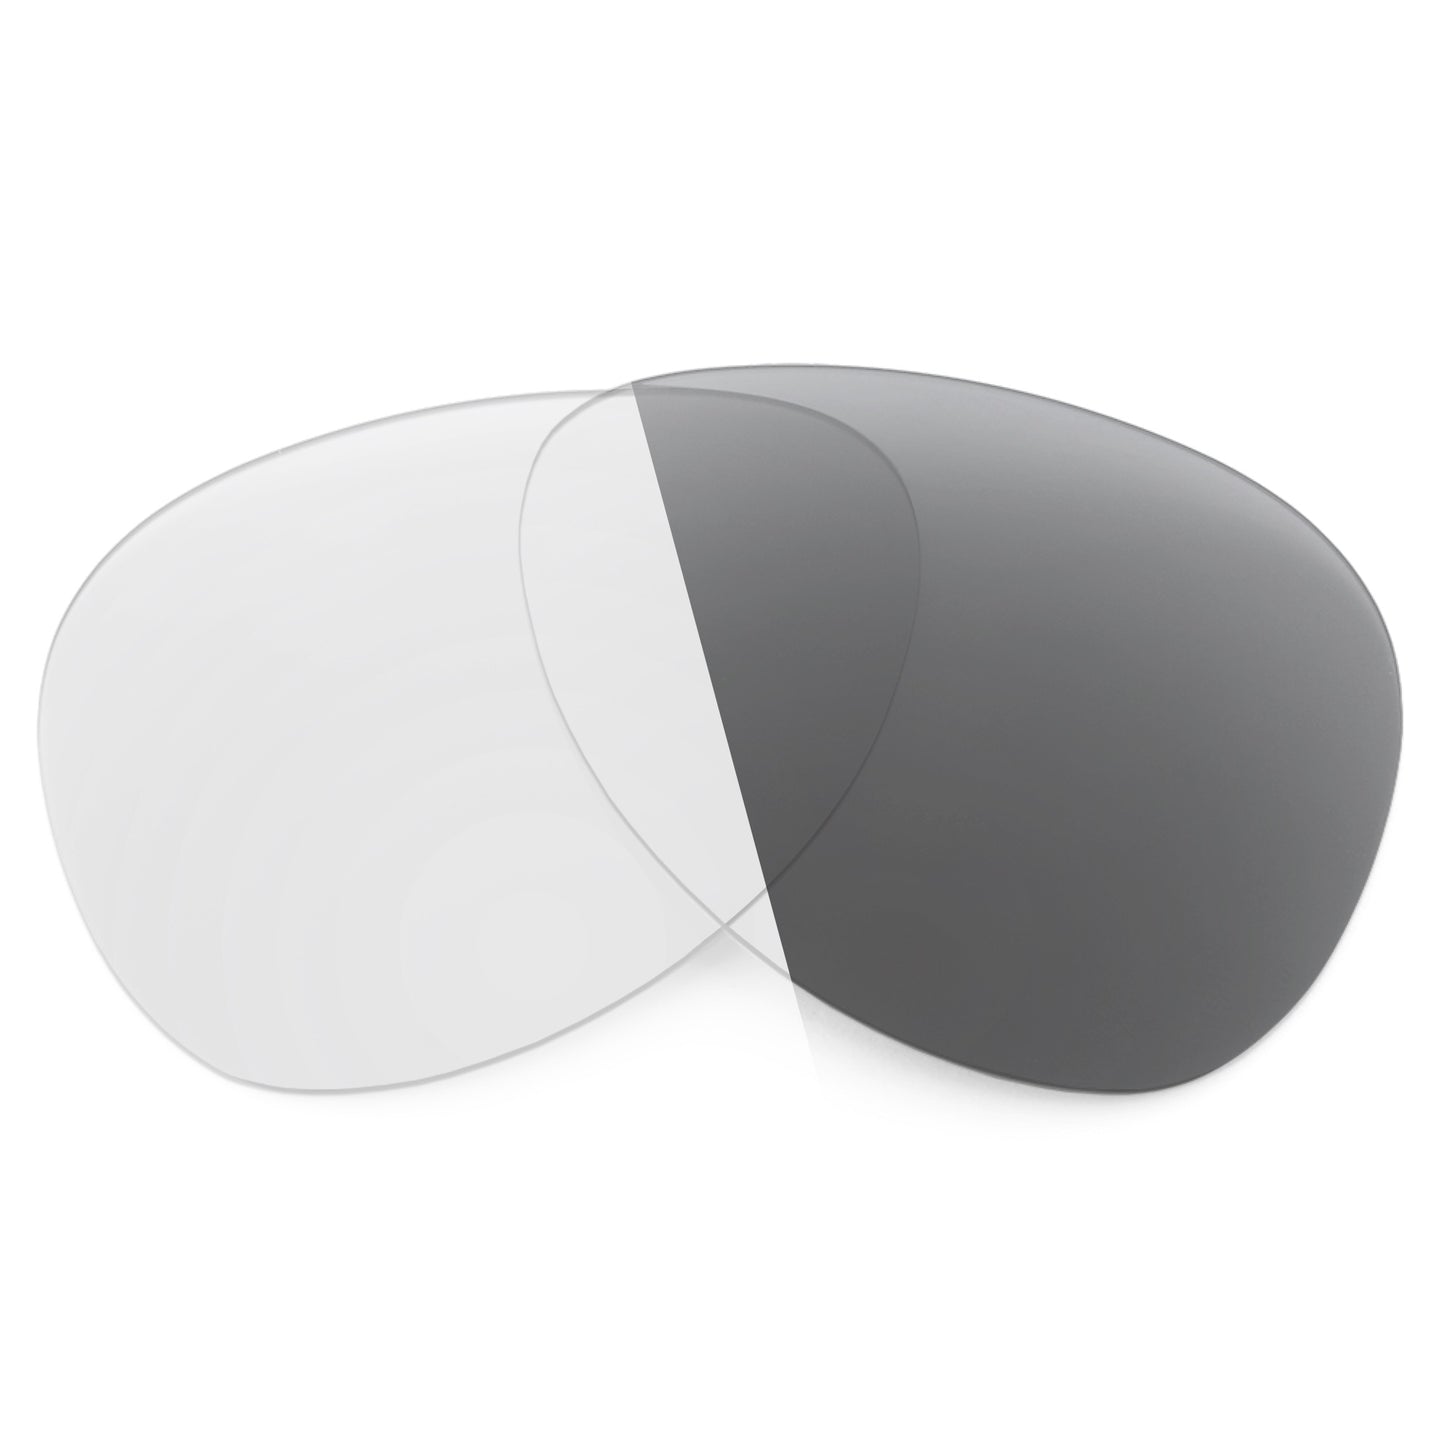 Revant replacement lenses for Maui Jim Nalani MJ295 Non-Polarized Adapt Gray Photochromic